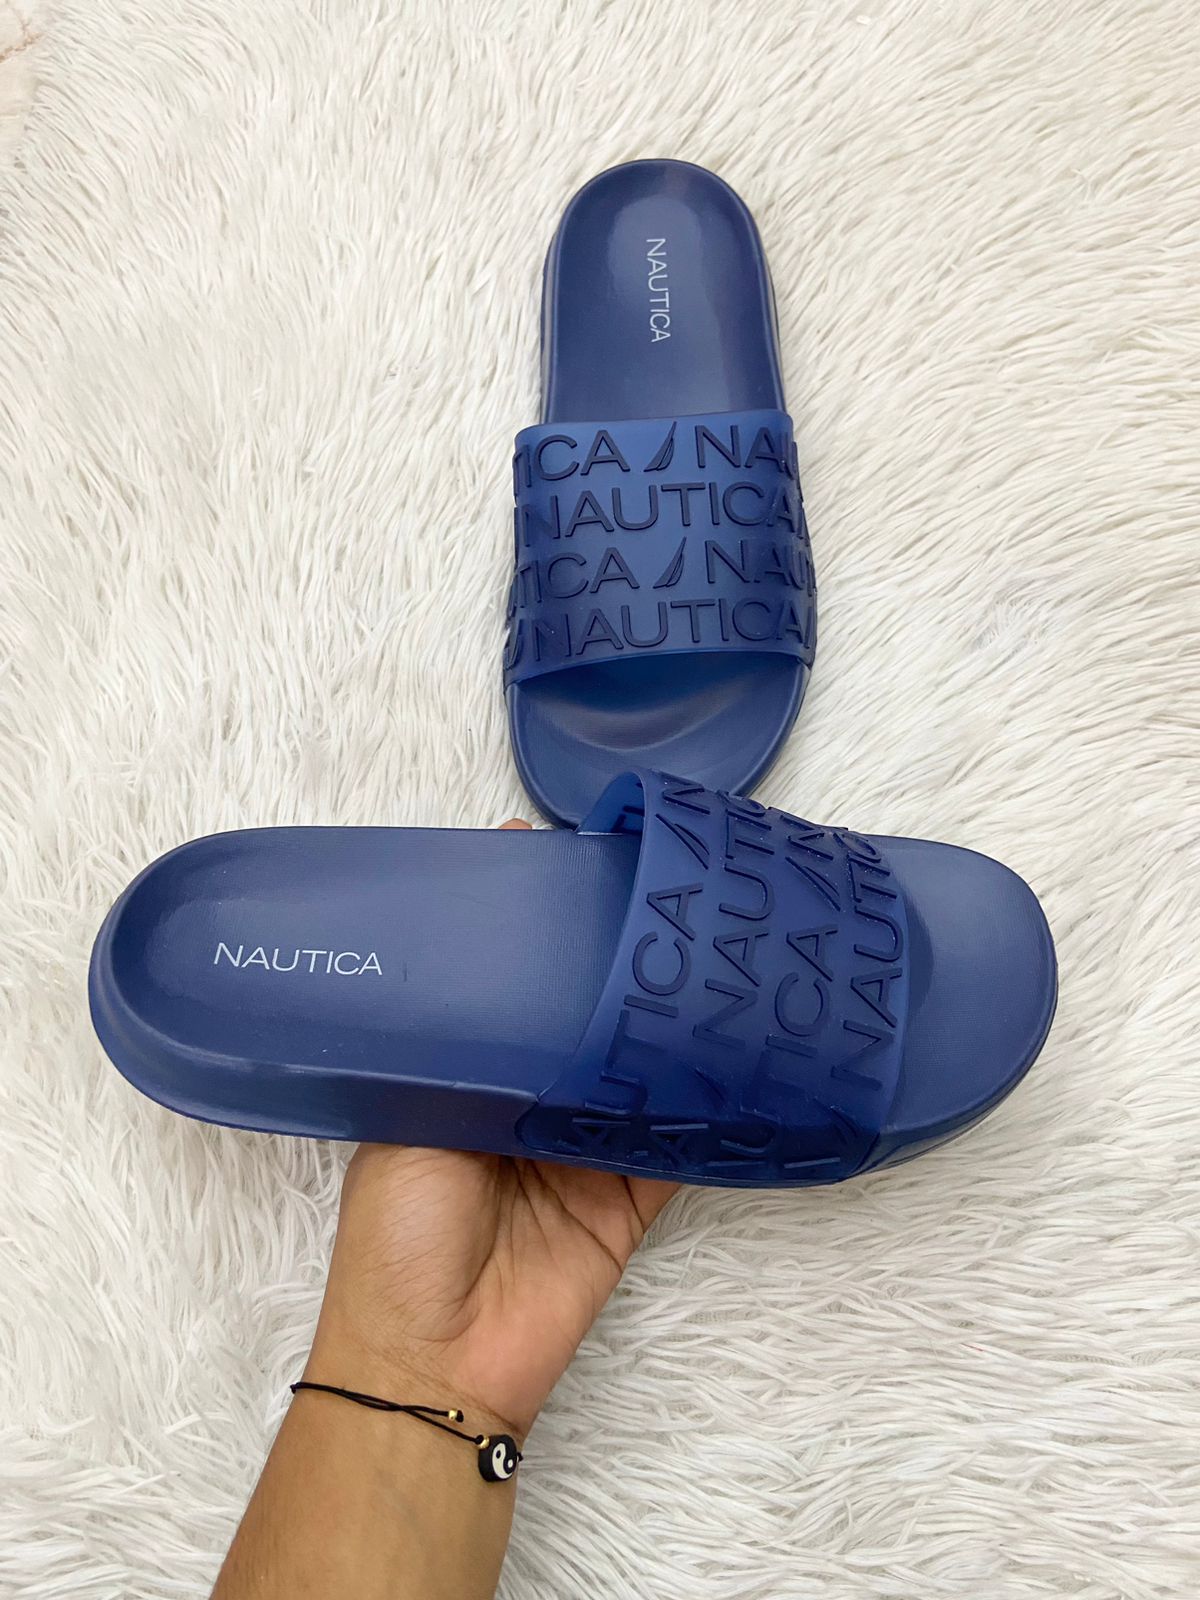 Sandalias NAUTICA original, Azul marino con letras NAUTICA alrededor.